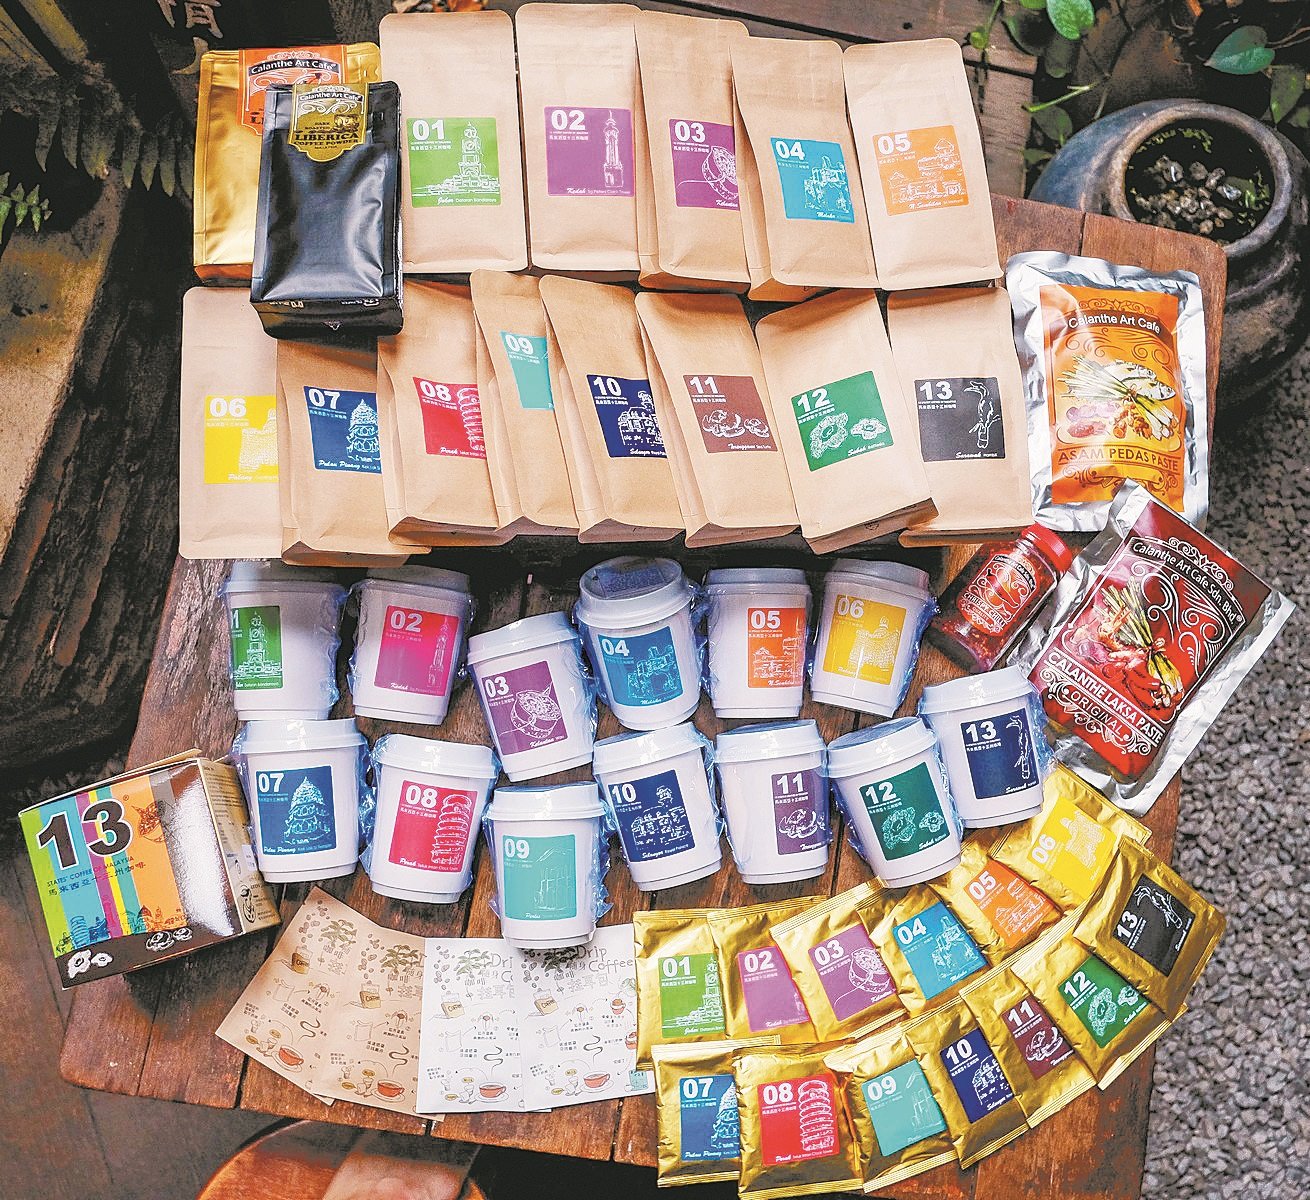 为了配合不同顾客群的需求，市场上有不同包装的“马来西亚13州咖啡”，包括有精美套装、散装及杯装等。